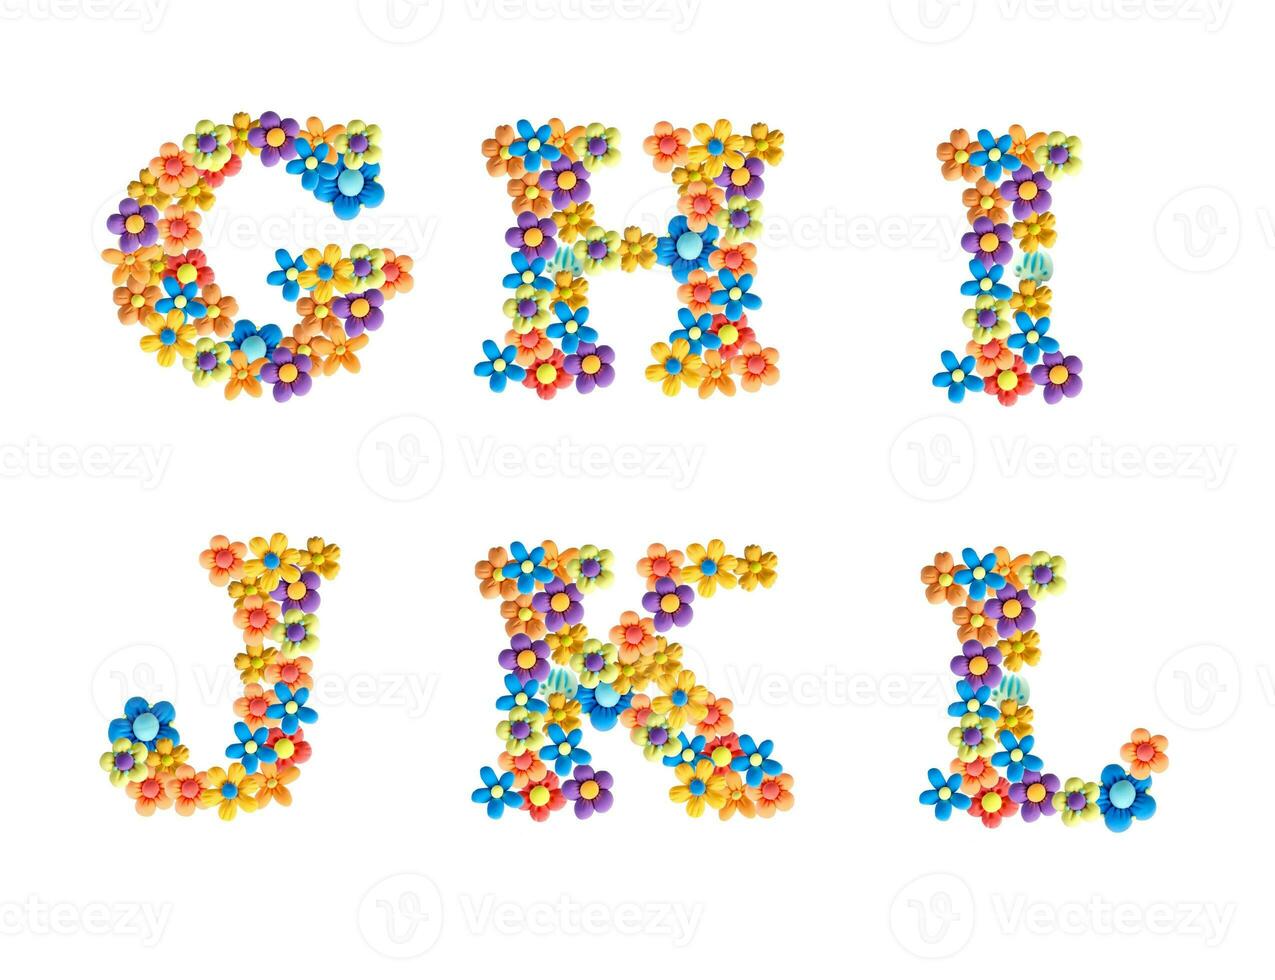 3d alfabet, handgjort plastin brev. unik design av brev för dekoration. brev tillverkad av ljus tredimensionell blommor ghijkl foto